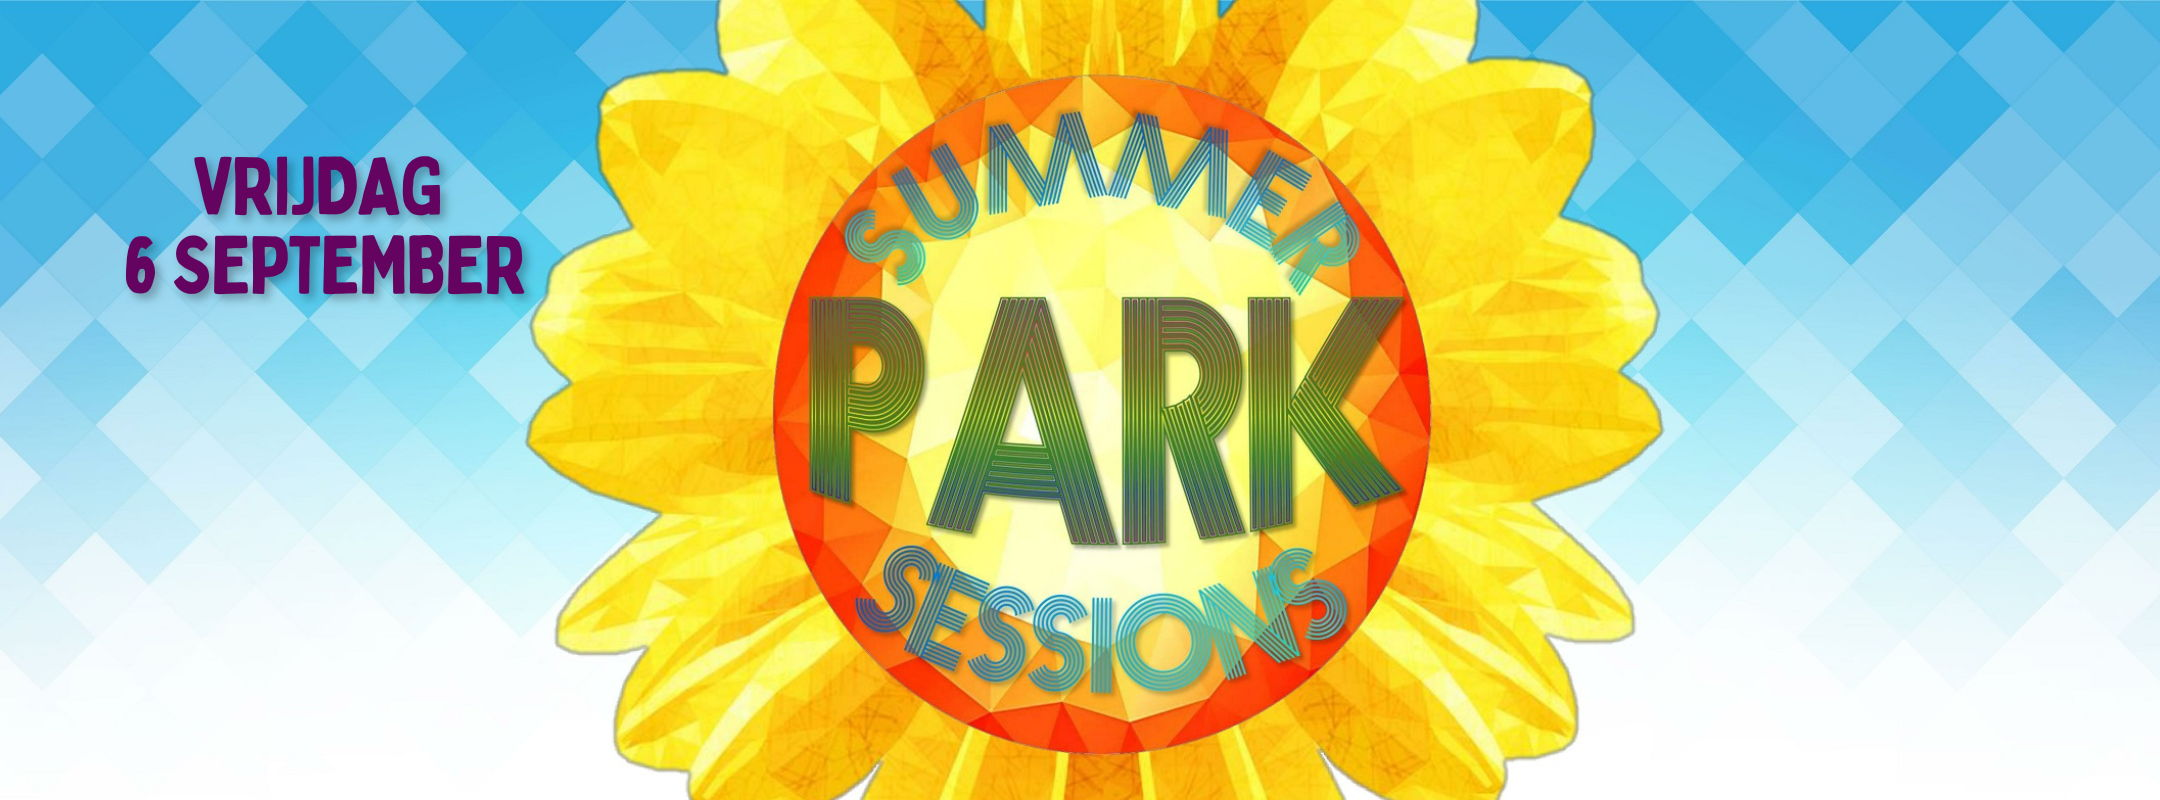 summerparksessionsvrijdag24